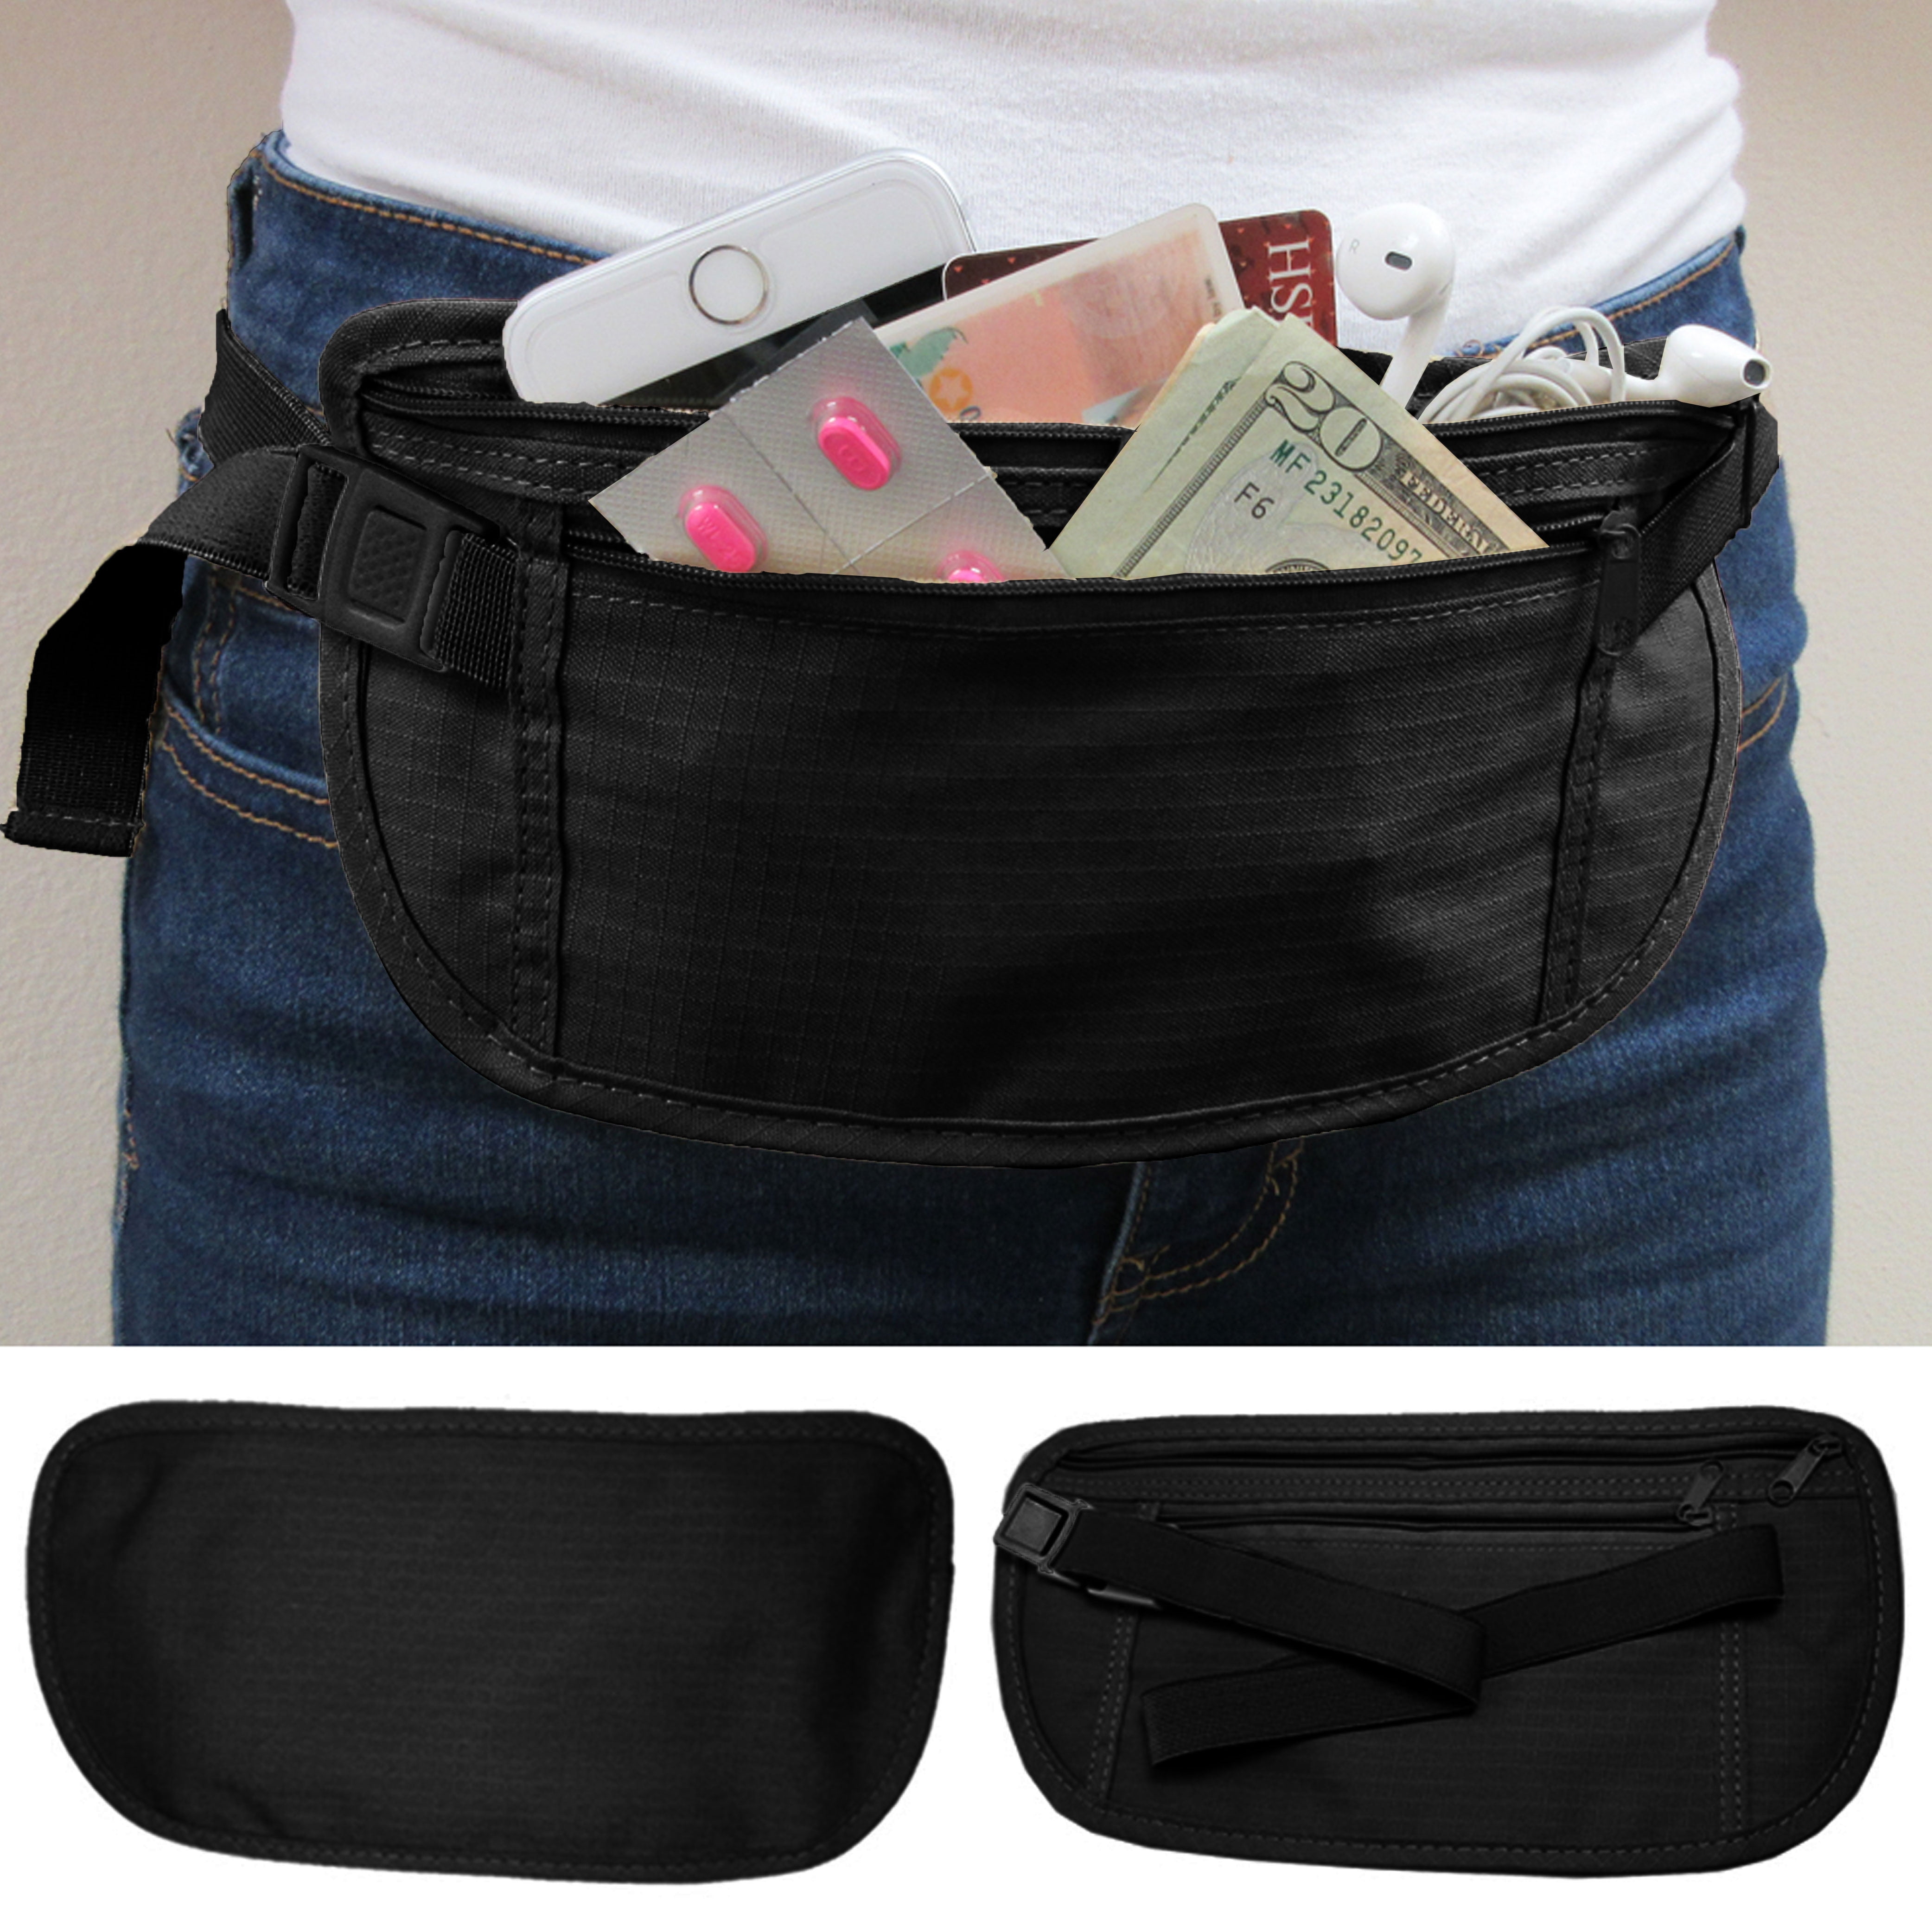 1 Waist Belt Bag Travel Pouch Hidden ID Security Money Compact Black - Walmart.com